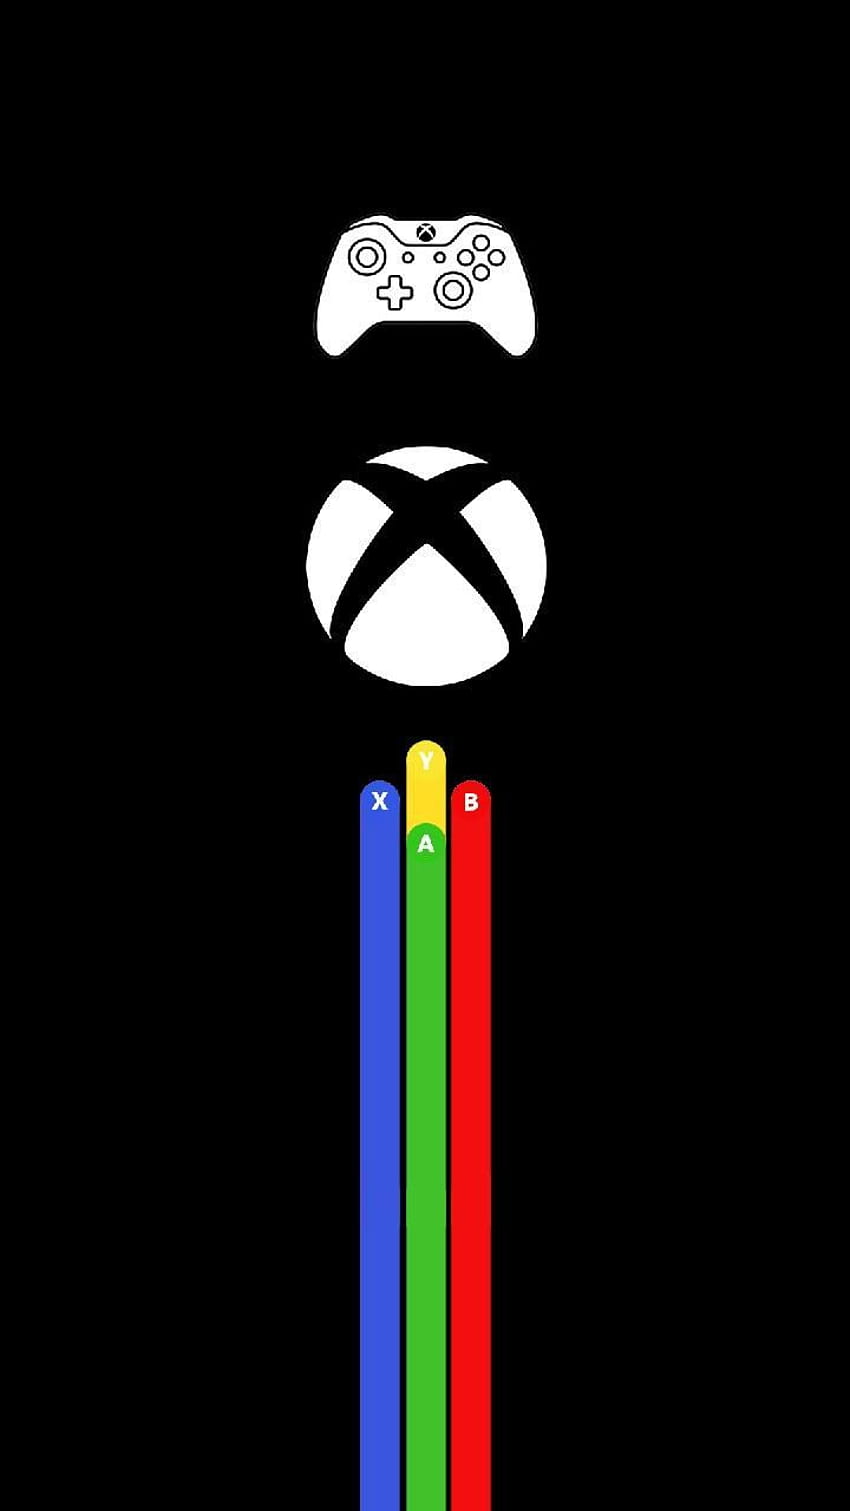 Hình nền Xbox Tối giản sẽ mang lại cho bạn trải nghiệm tuyệt vời với không gian tĩnh lặng và thanh thoát. Màu sắc độc đáo và đơn giản sẽ giúp bạn tập trung vào game và nâng cao trình độ của mình. Hãy thử ngay để cảm nhận sự khác biệt.